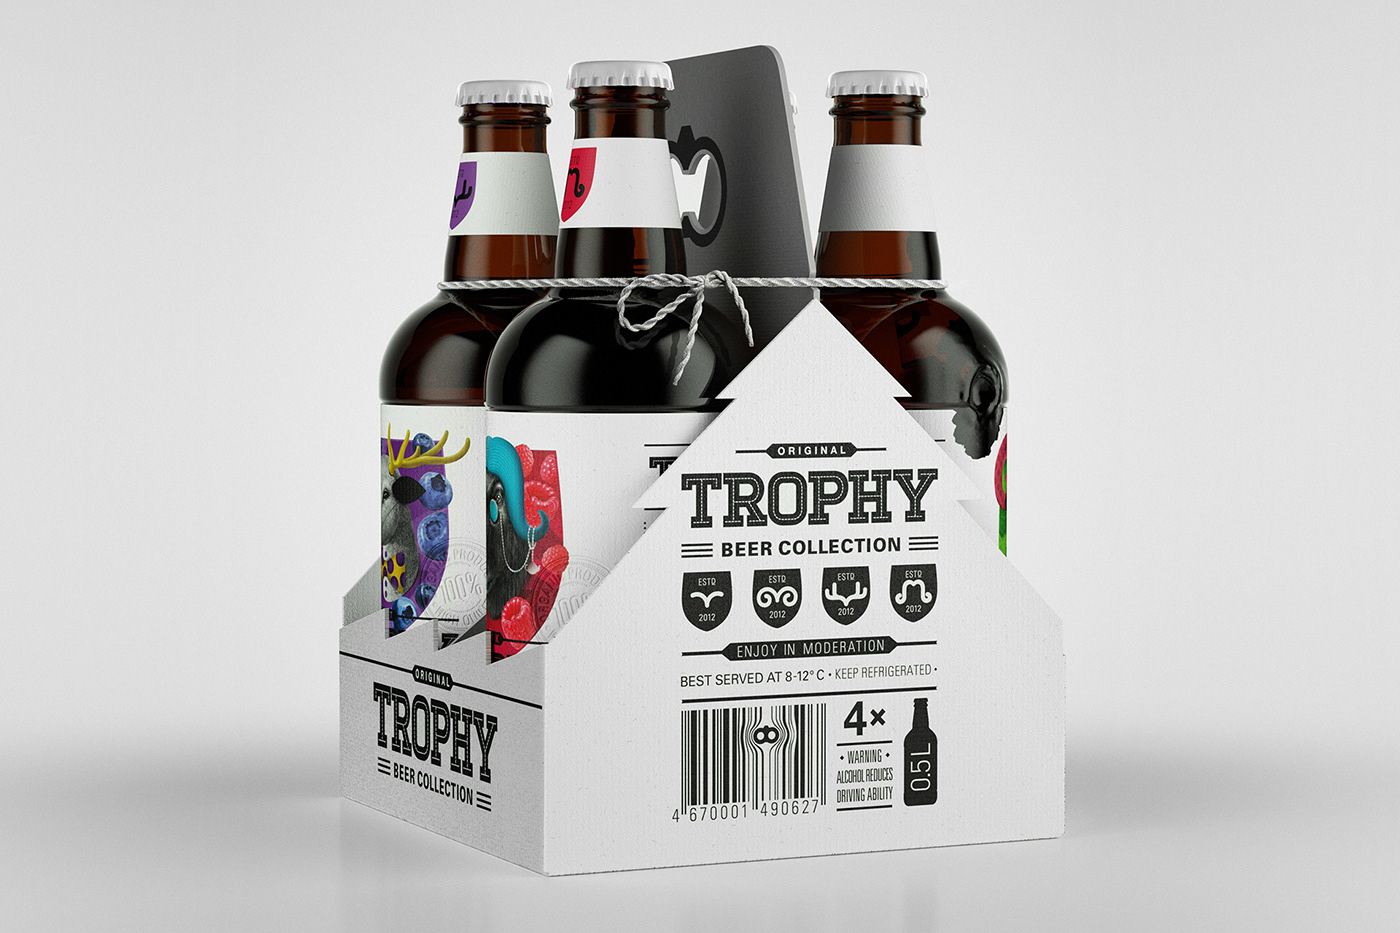 beer trophy bottle glass pentawards beverage beer label bottle design label design packaging design